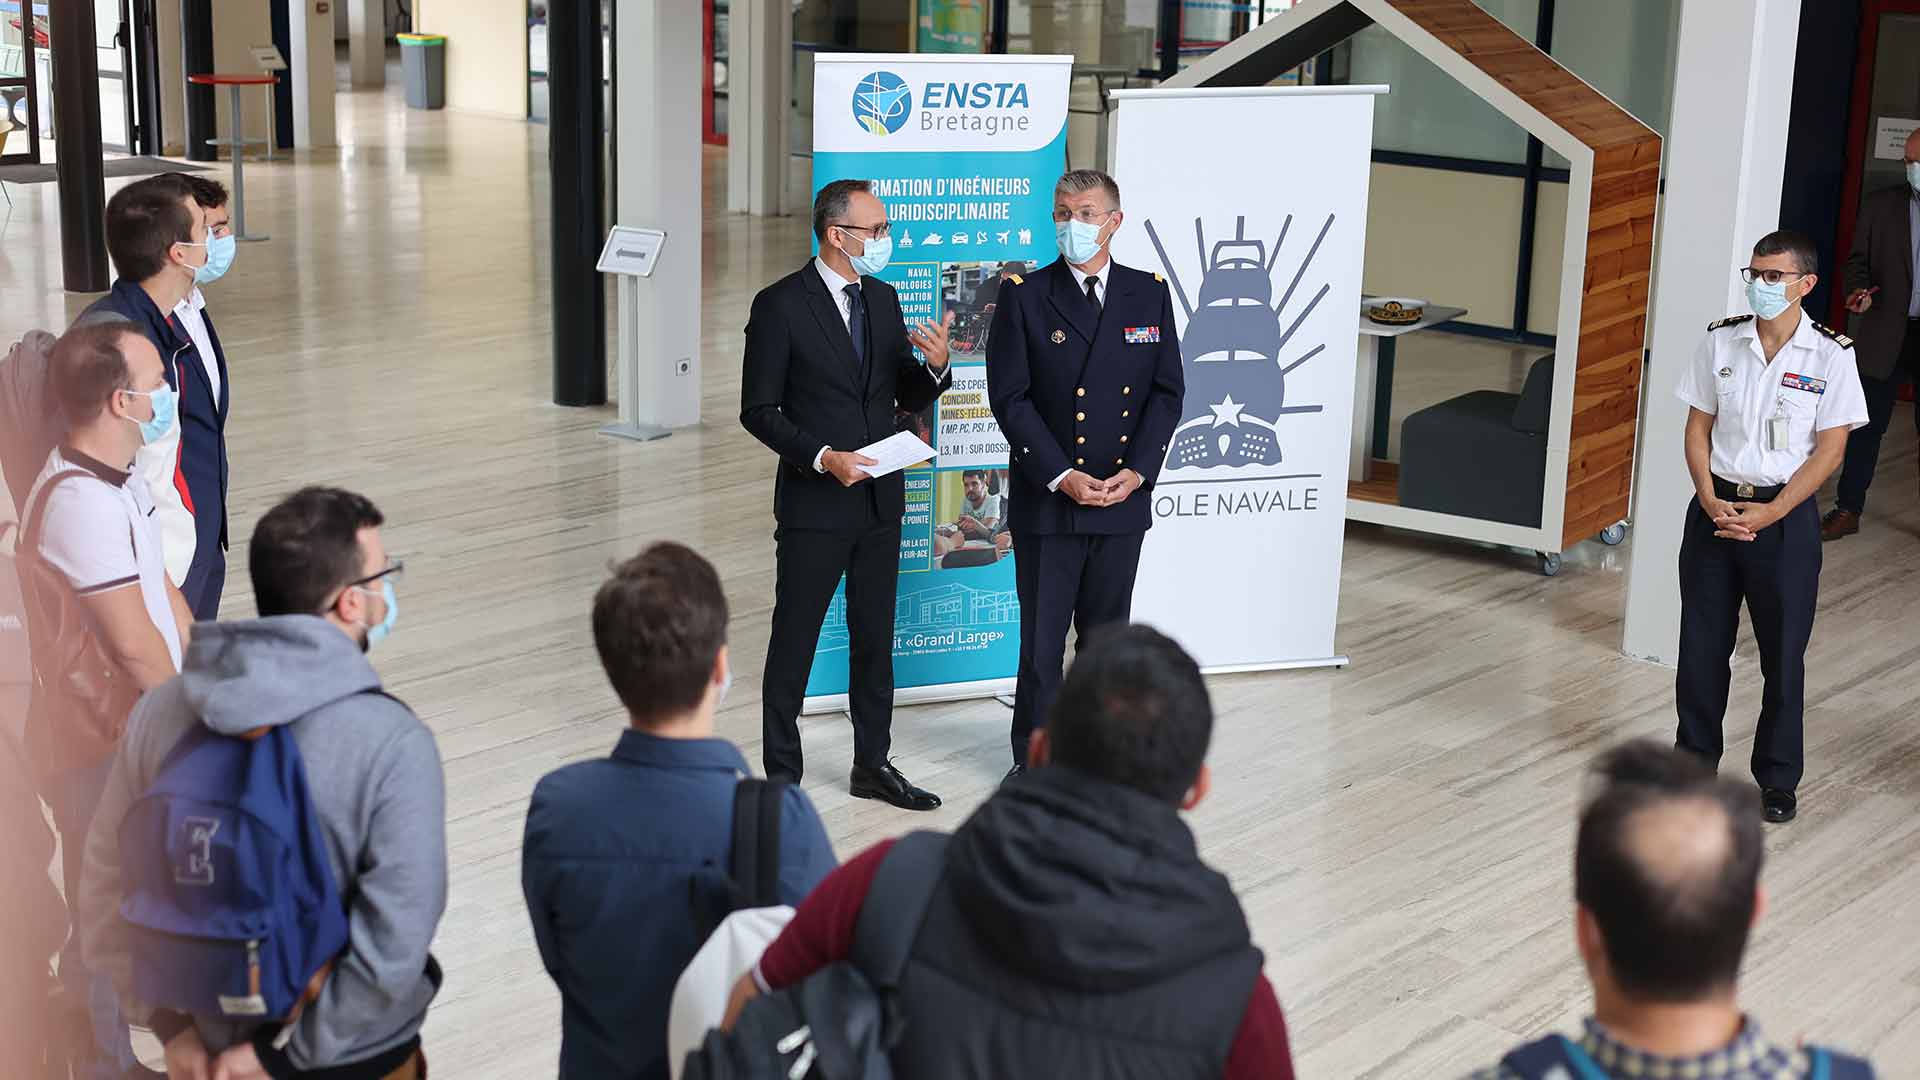 ENSTA Bretagne ; Discours d'accueil ENSTA Bretagne et Ecole Navale pour la rentrée du Mastère Spécialisé Management de Projets Maritimes - Maintenance des navires